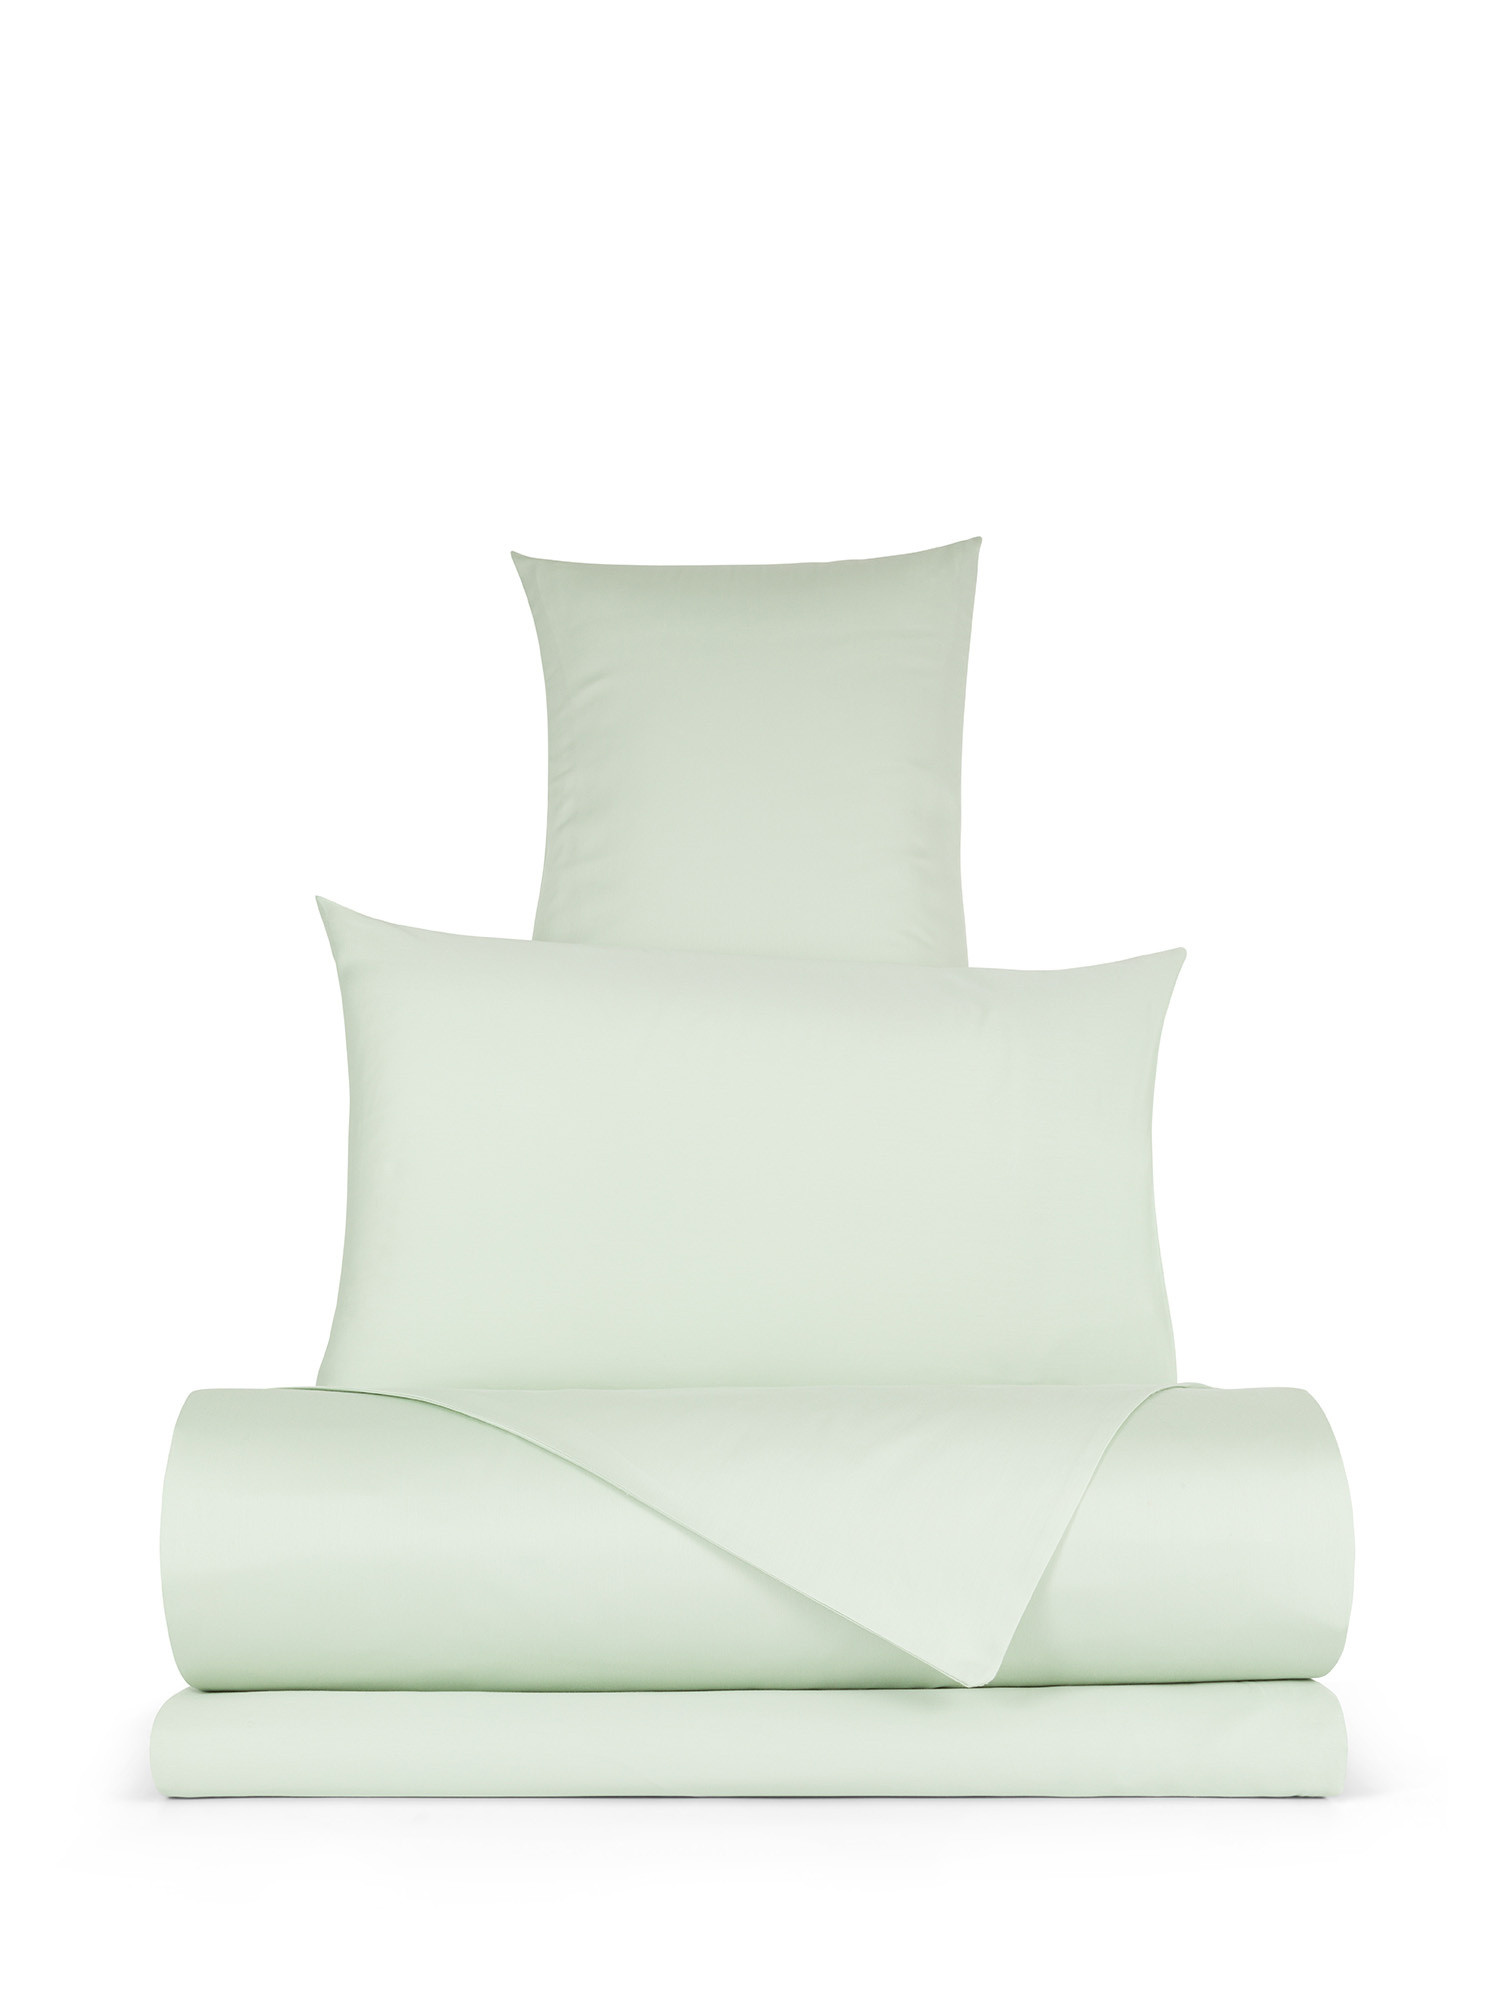 Solid color cotton satin duvet cover set, Green, large image number 0